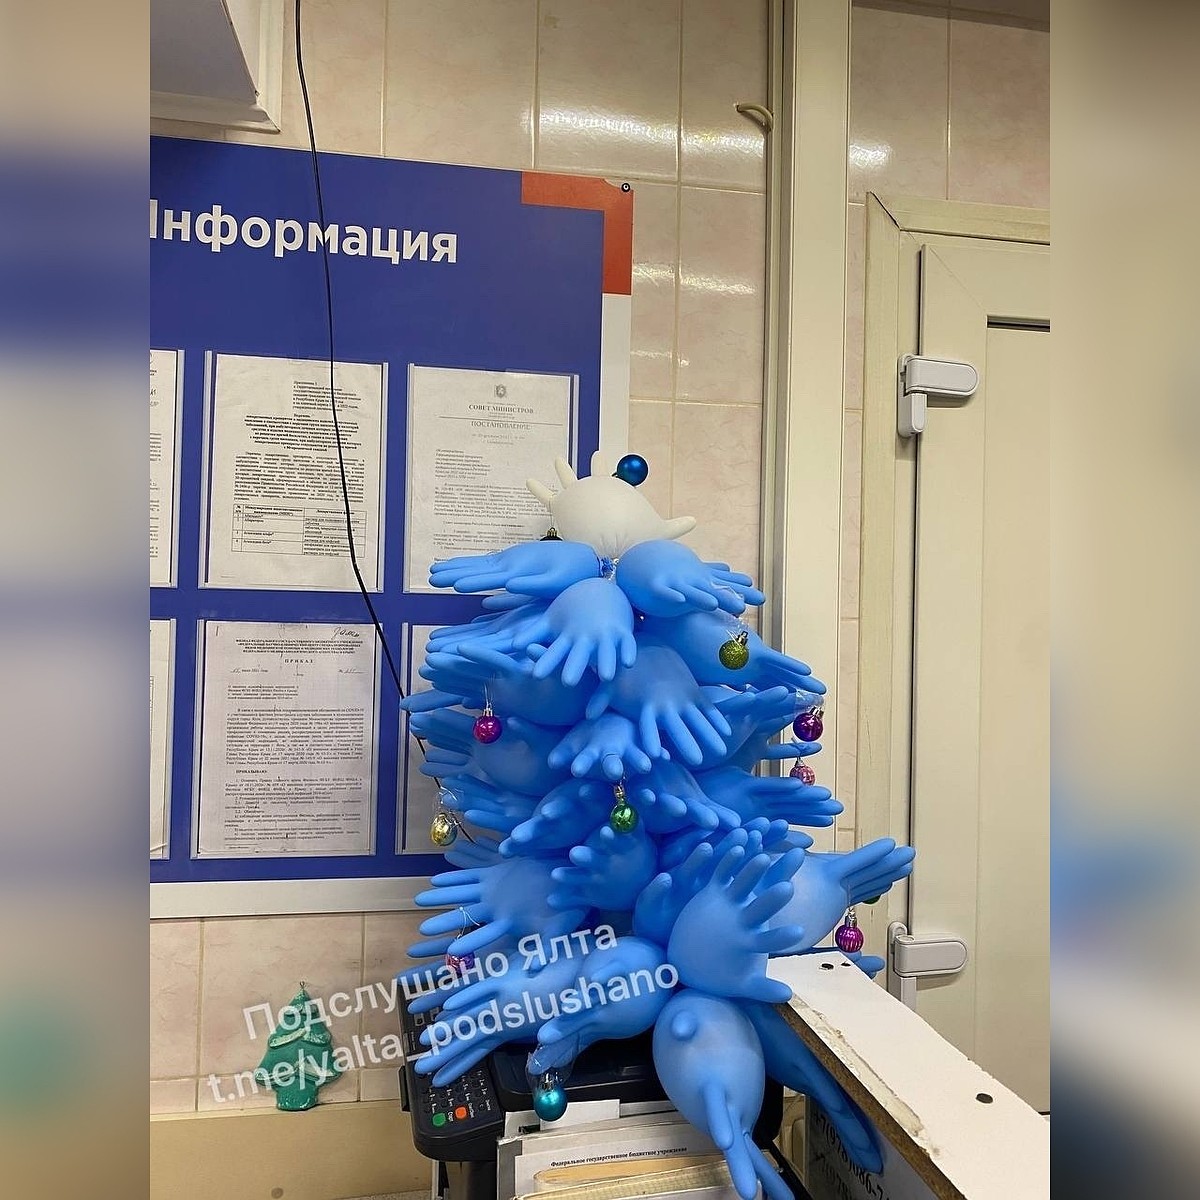 Врачи Астаны смастерили елки из перчаток, шприцев и медсправок | slep-kostroma.ru